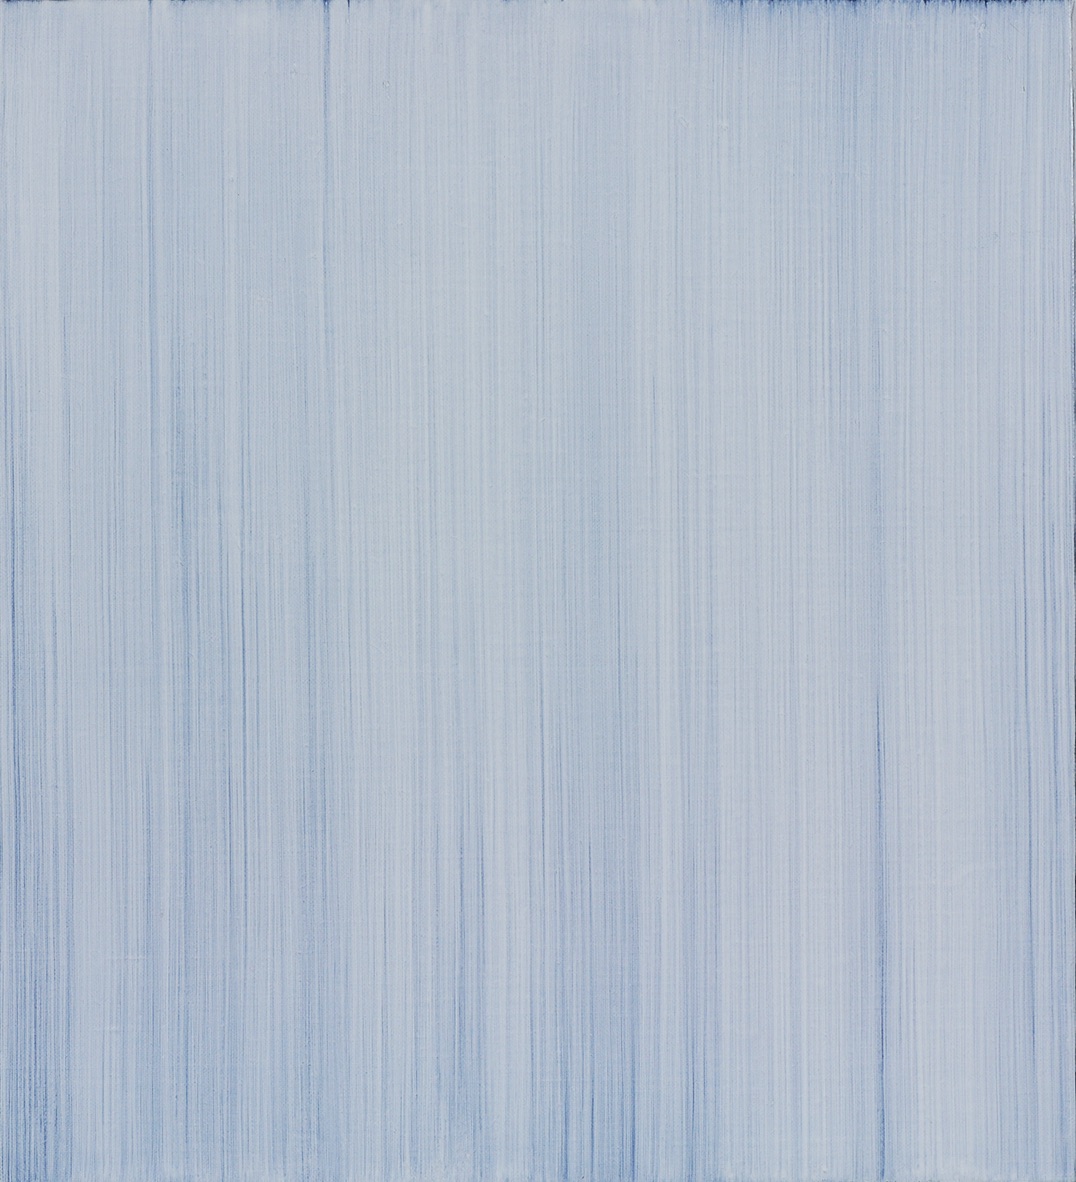 Quattro velature di bianco su fondo nero, 2006, olio su tela, cm 55x50